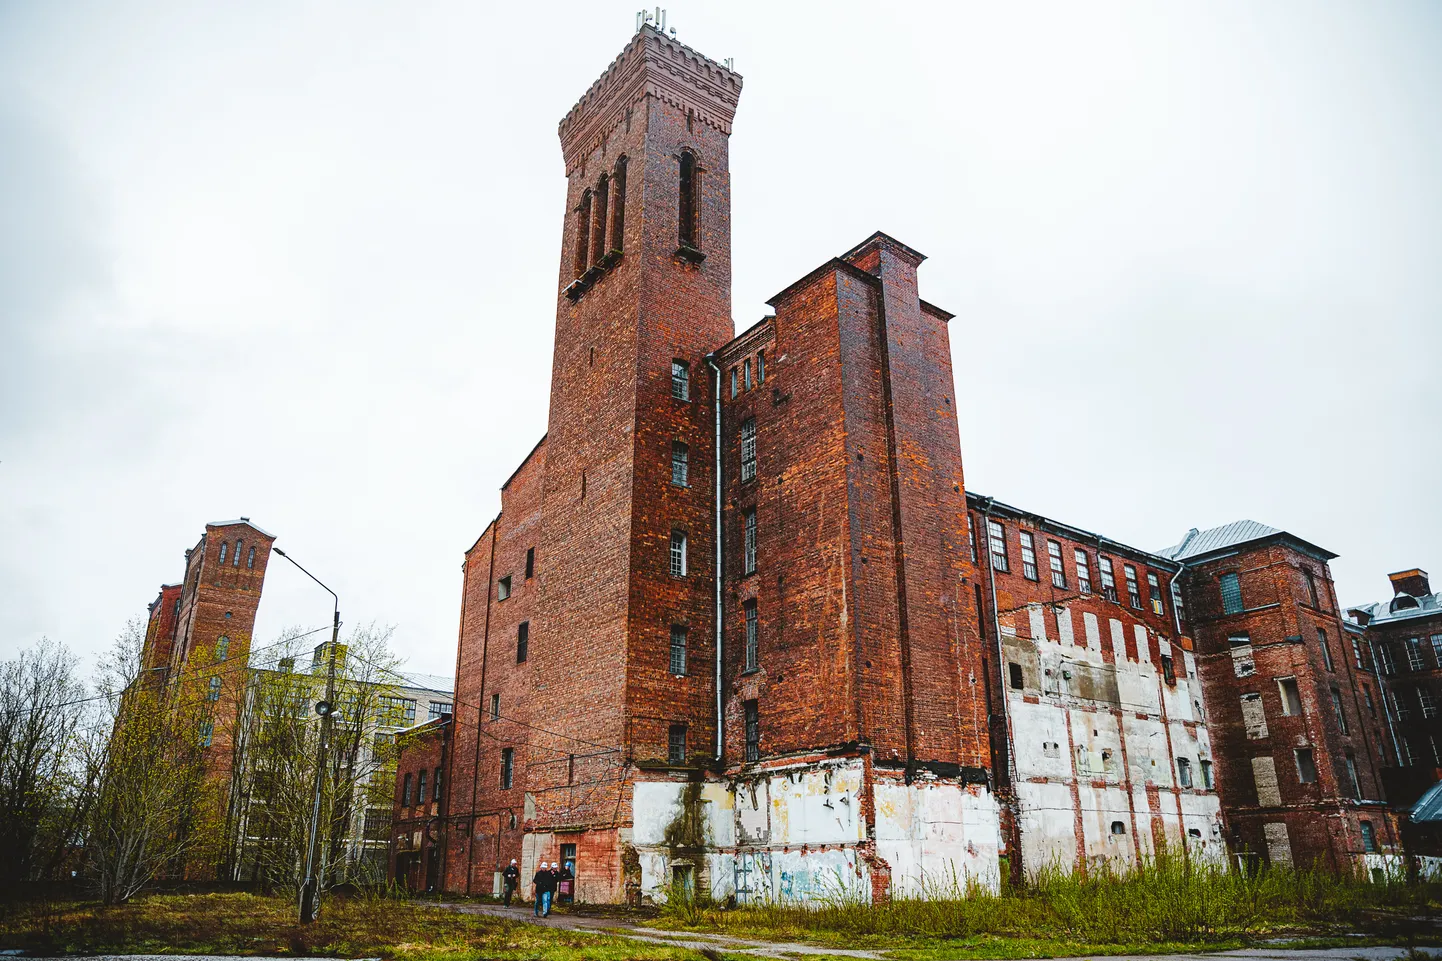 Üks Kreenholmi kvartali silmapaistvamaid ehitisi on Joala vabrik.